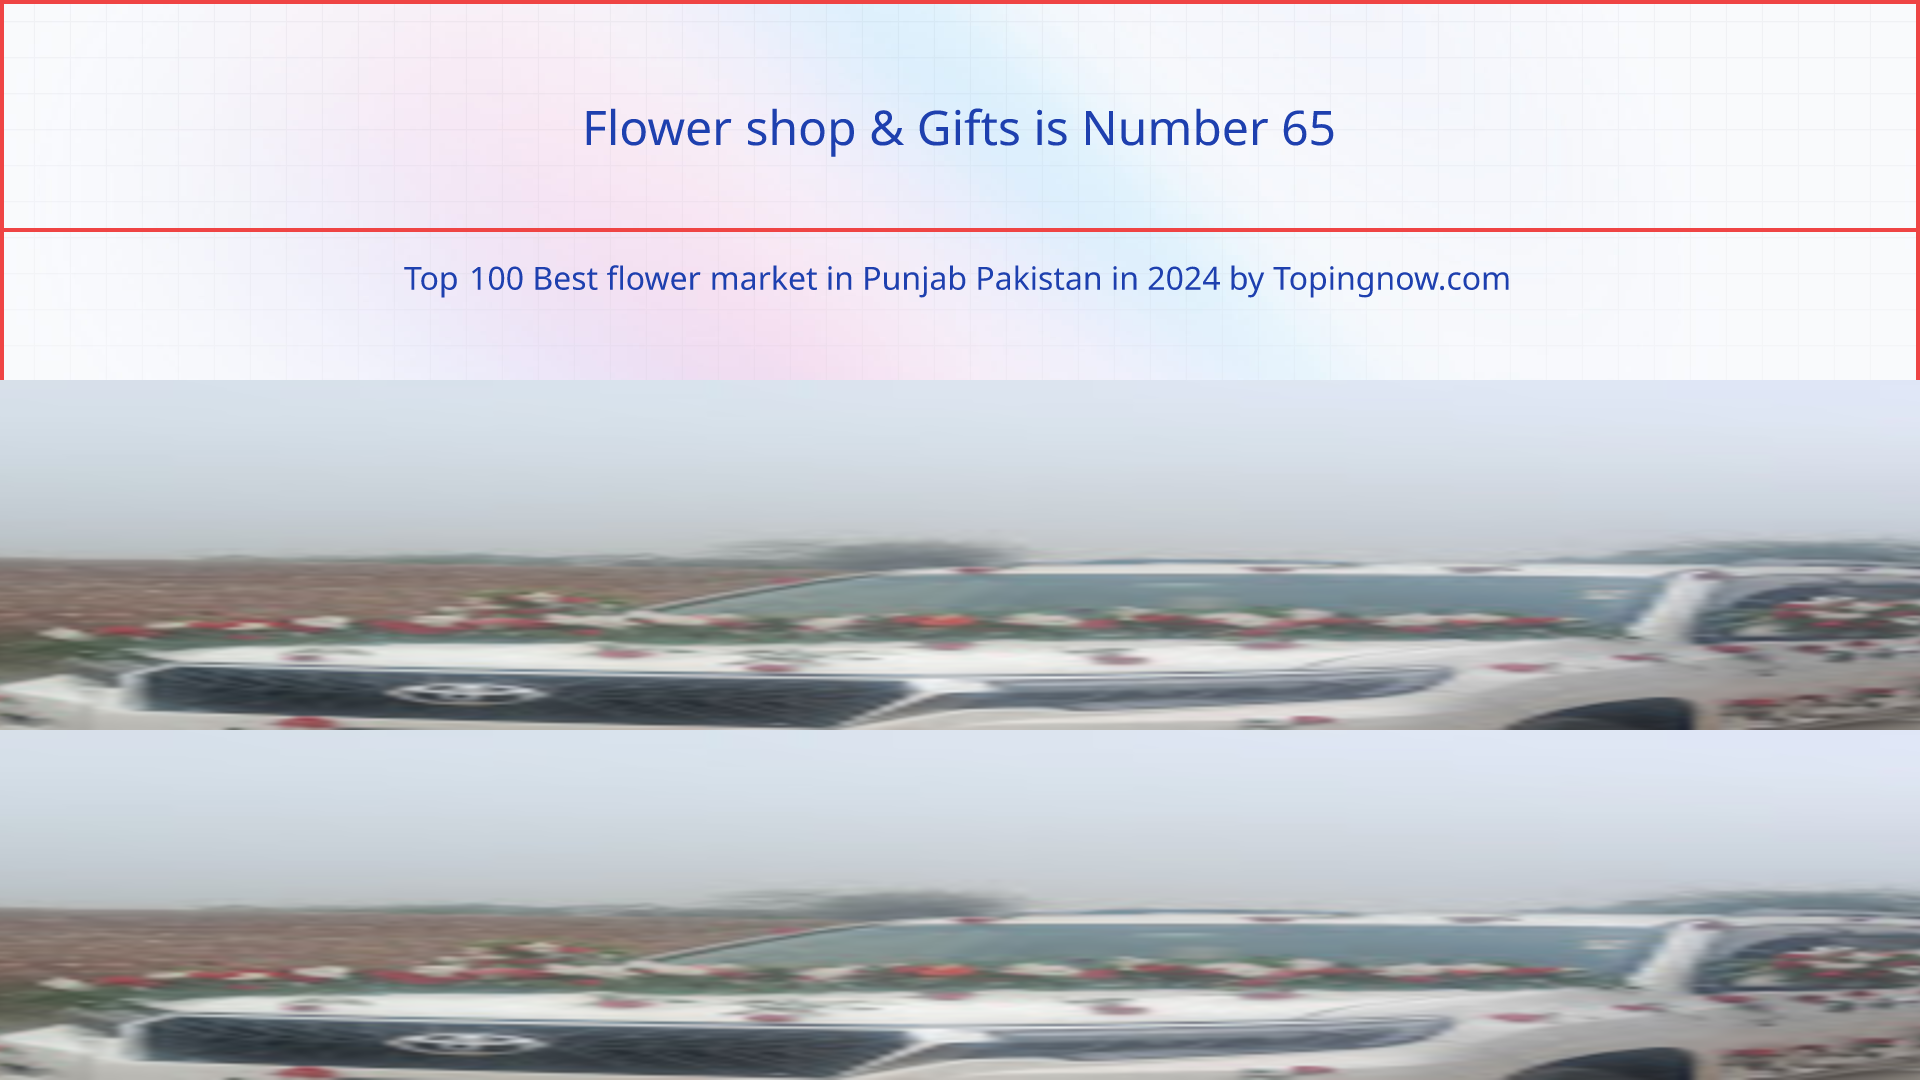 Flower shop & Gifts: Top 100 Best flower market in Punjab Pakistan in 2024